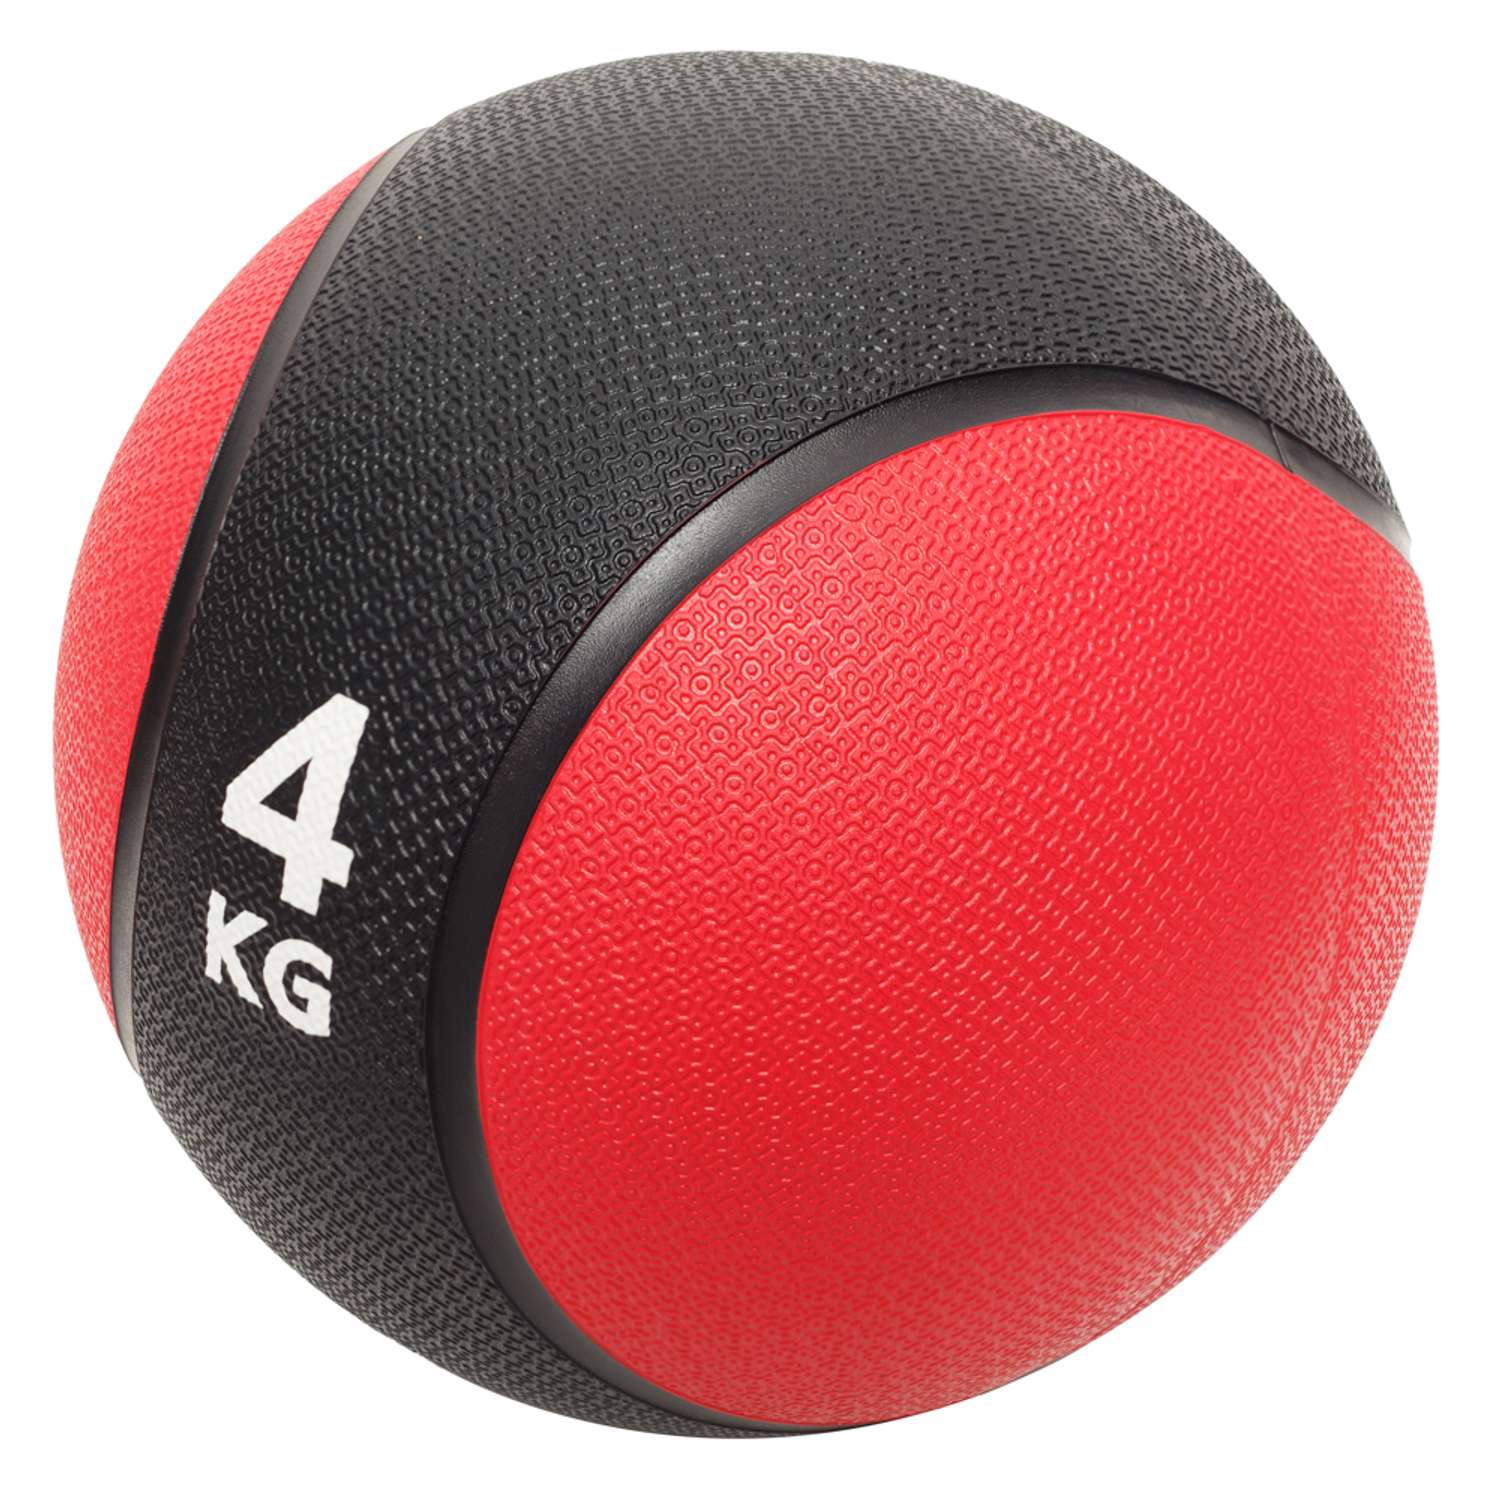 Медбол STRONG BODY медицинский мяч для фитнеса черно-красный 4 кг - фото 2